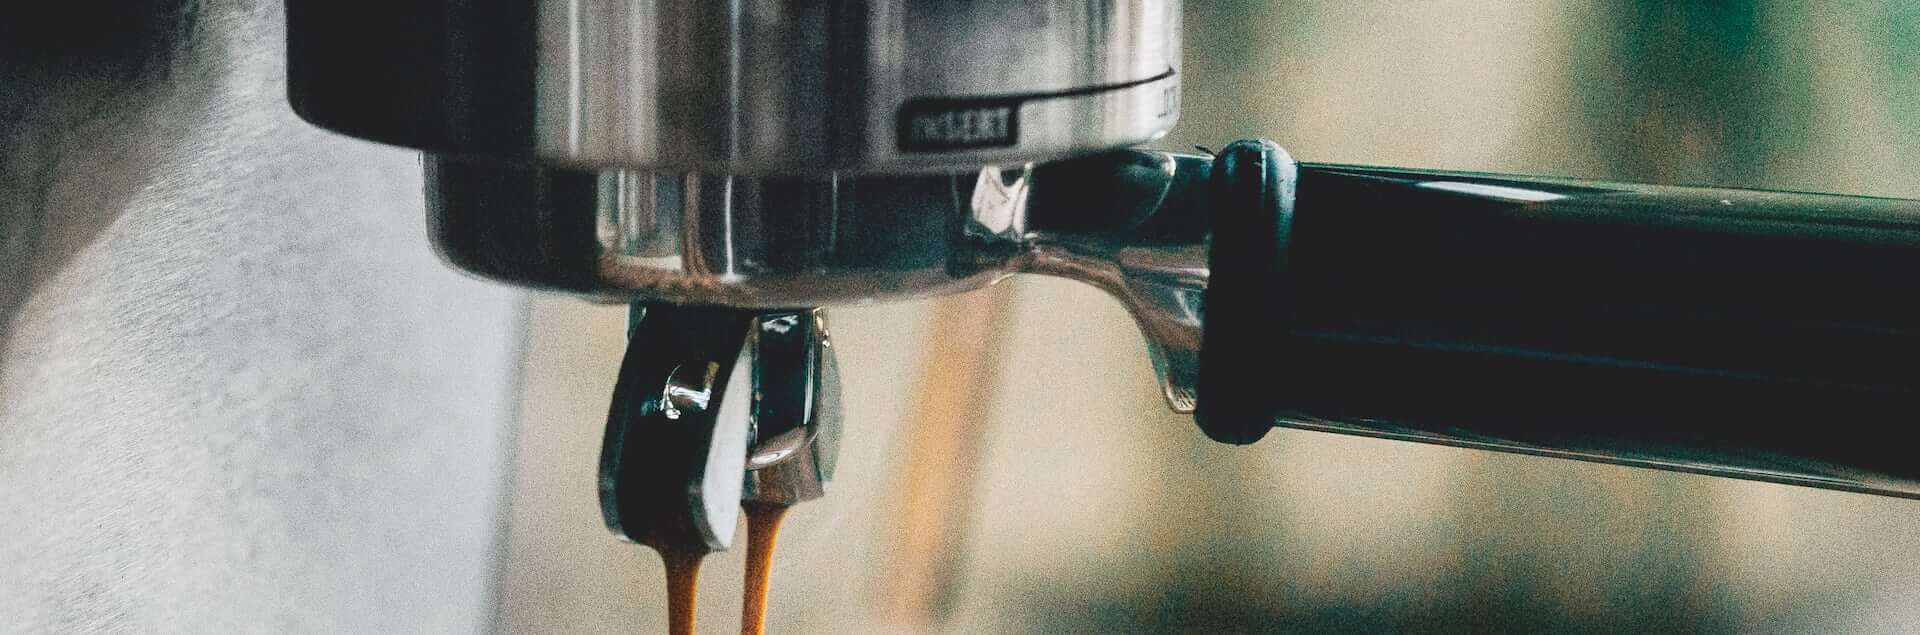 J.J. Darboven Mood Bild – Nahaufnahme eines Siebträgers bei Espressozubereitung